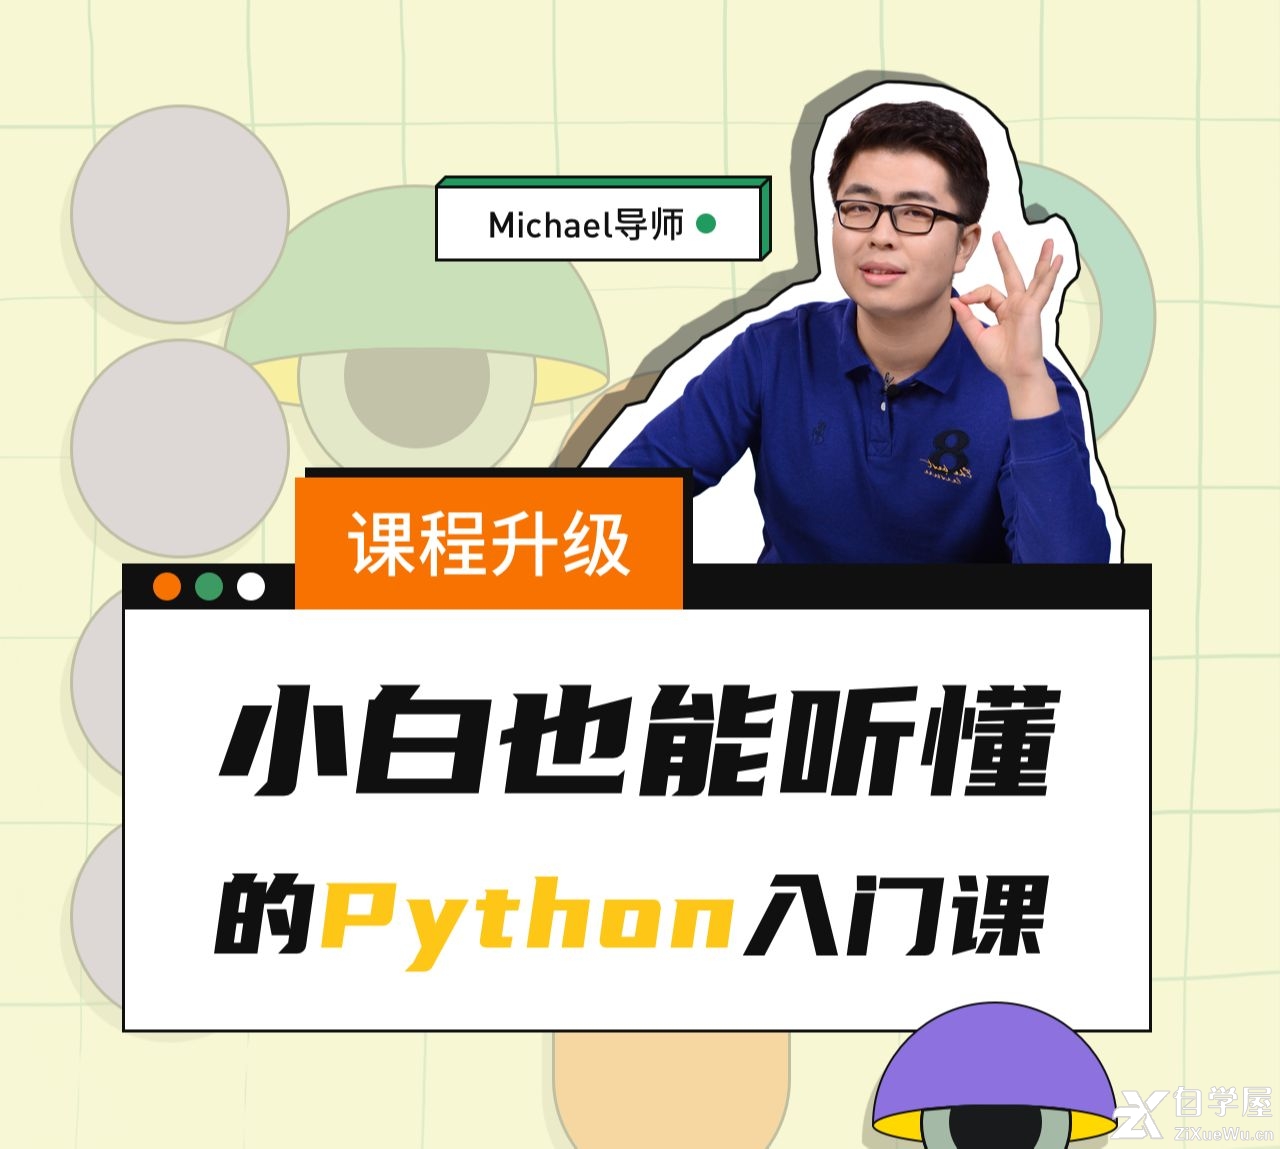 Python小白也能听懂的入门课.jpg